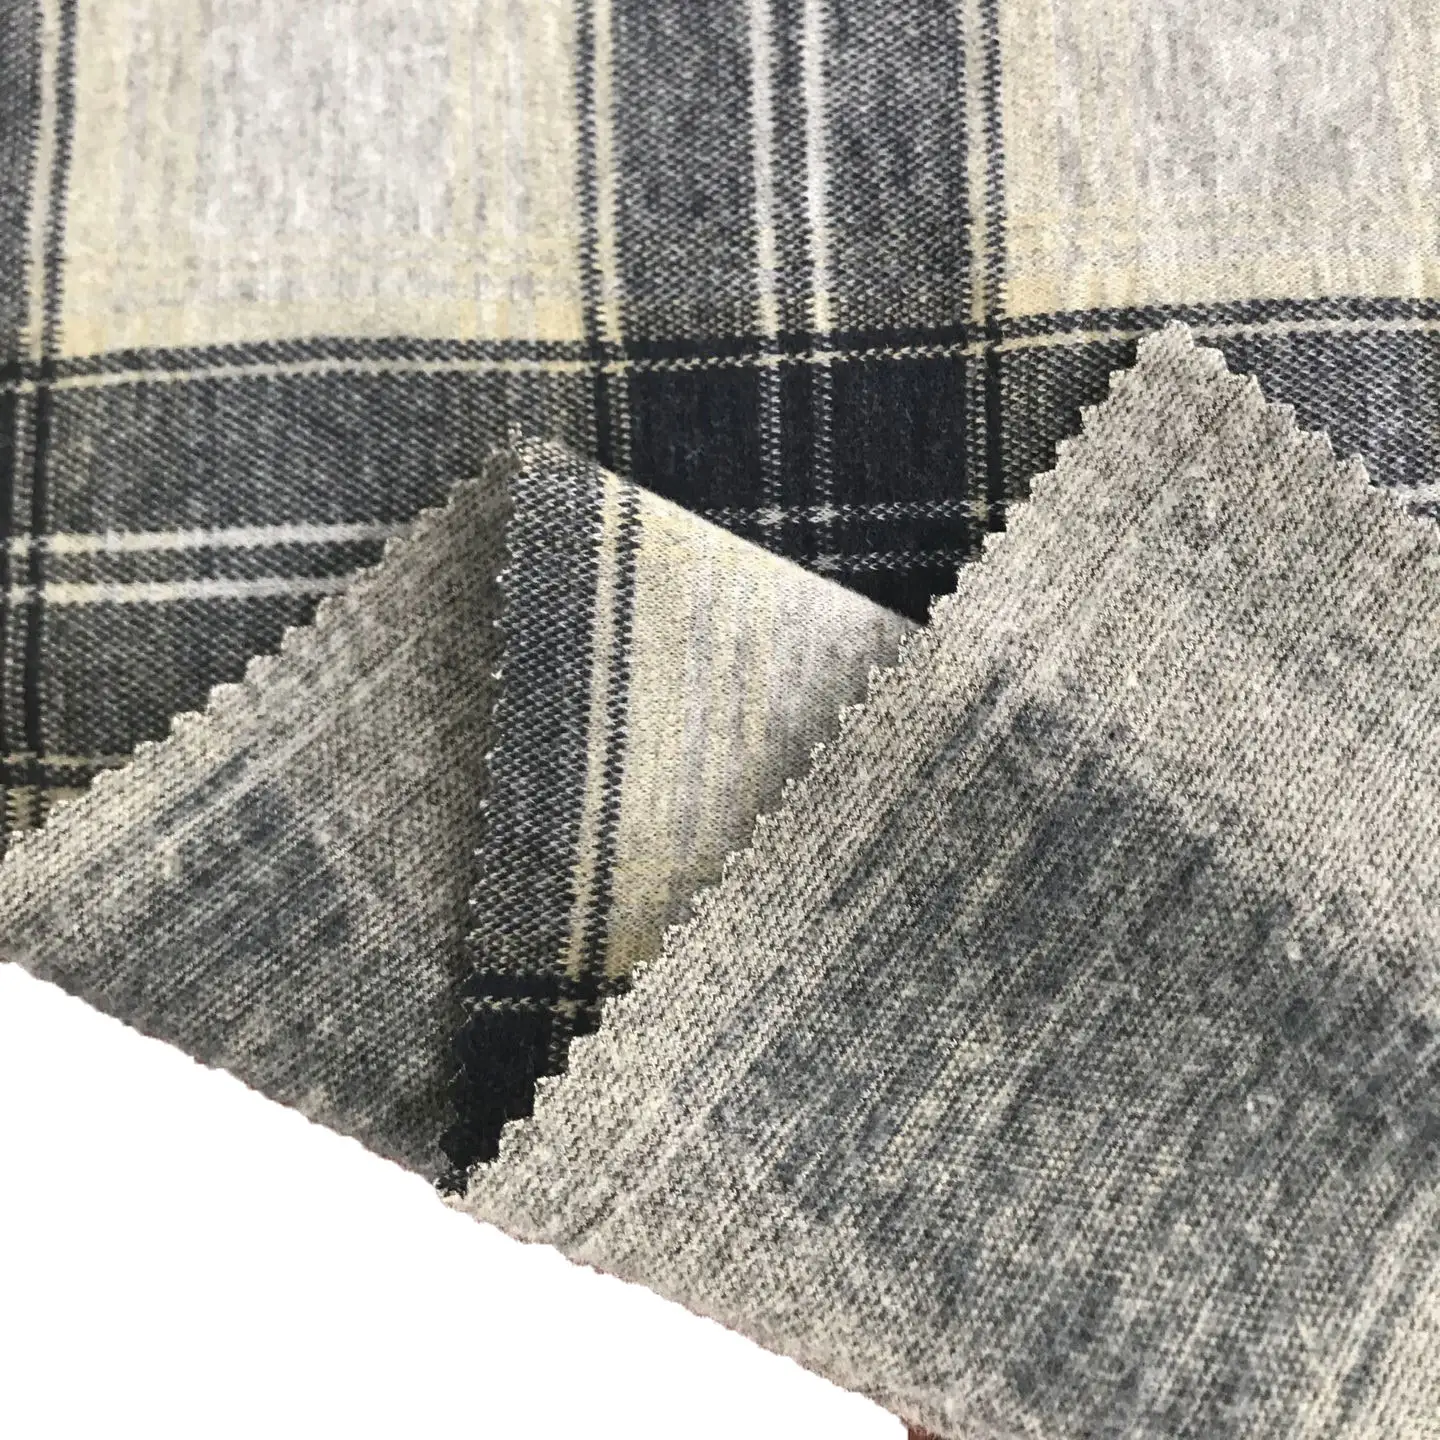 Stile classico Scottish Check Plaid Rayon poliestere TR Spandex elasticizzato maglia Jacquard Roma tessuto per sciarpa